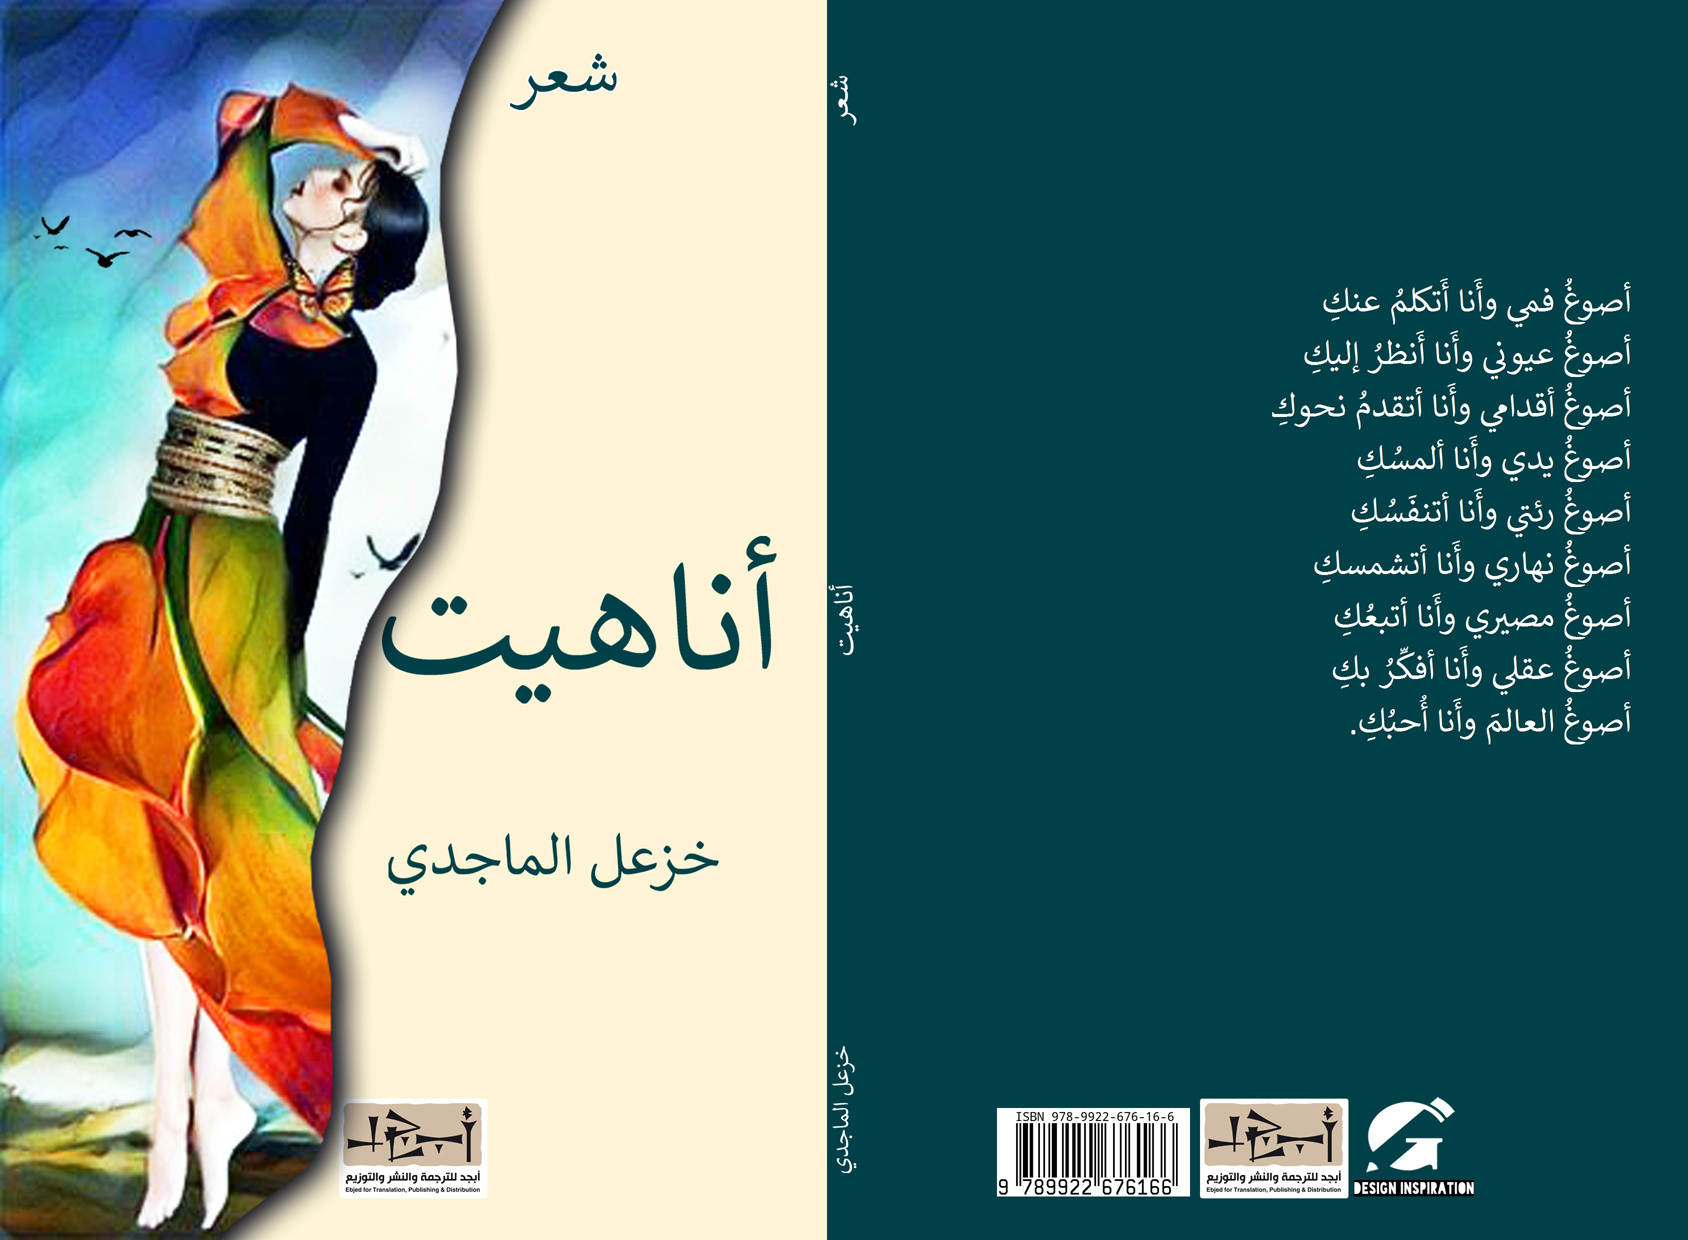 اسم الكتاب: أناهيت  تأليف: د. خزعل الماجدي